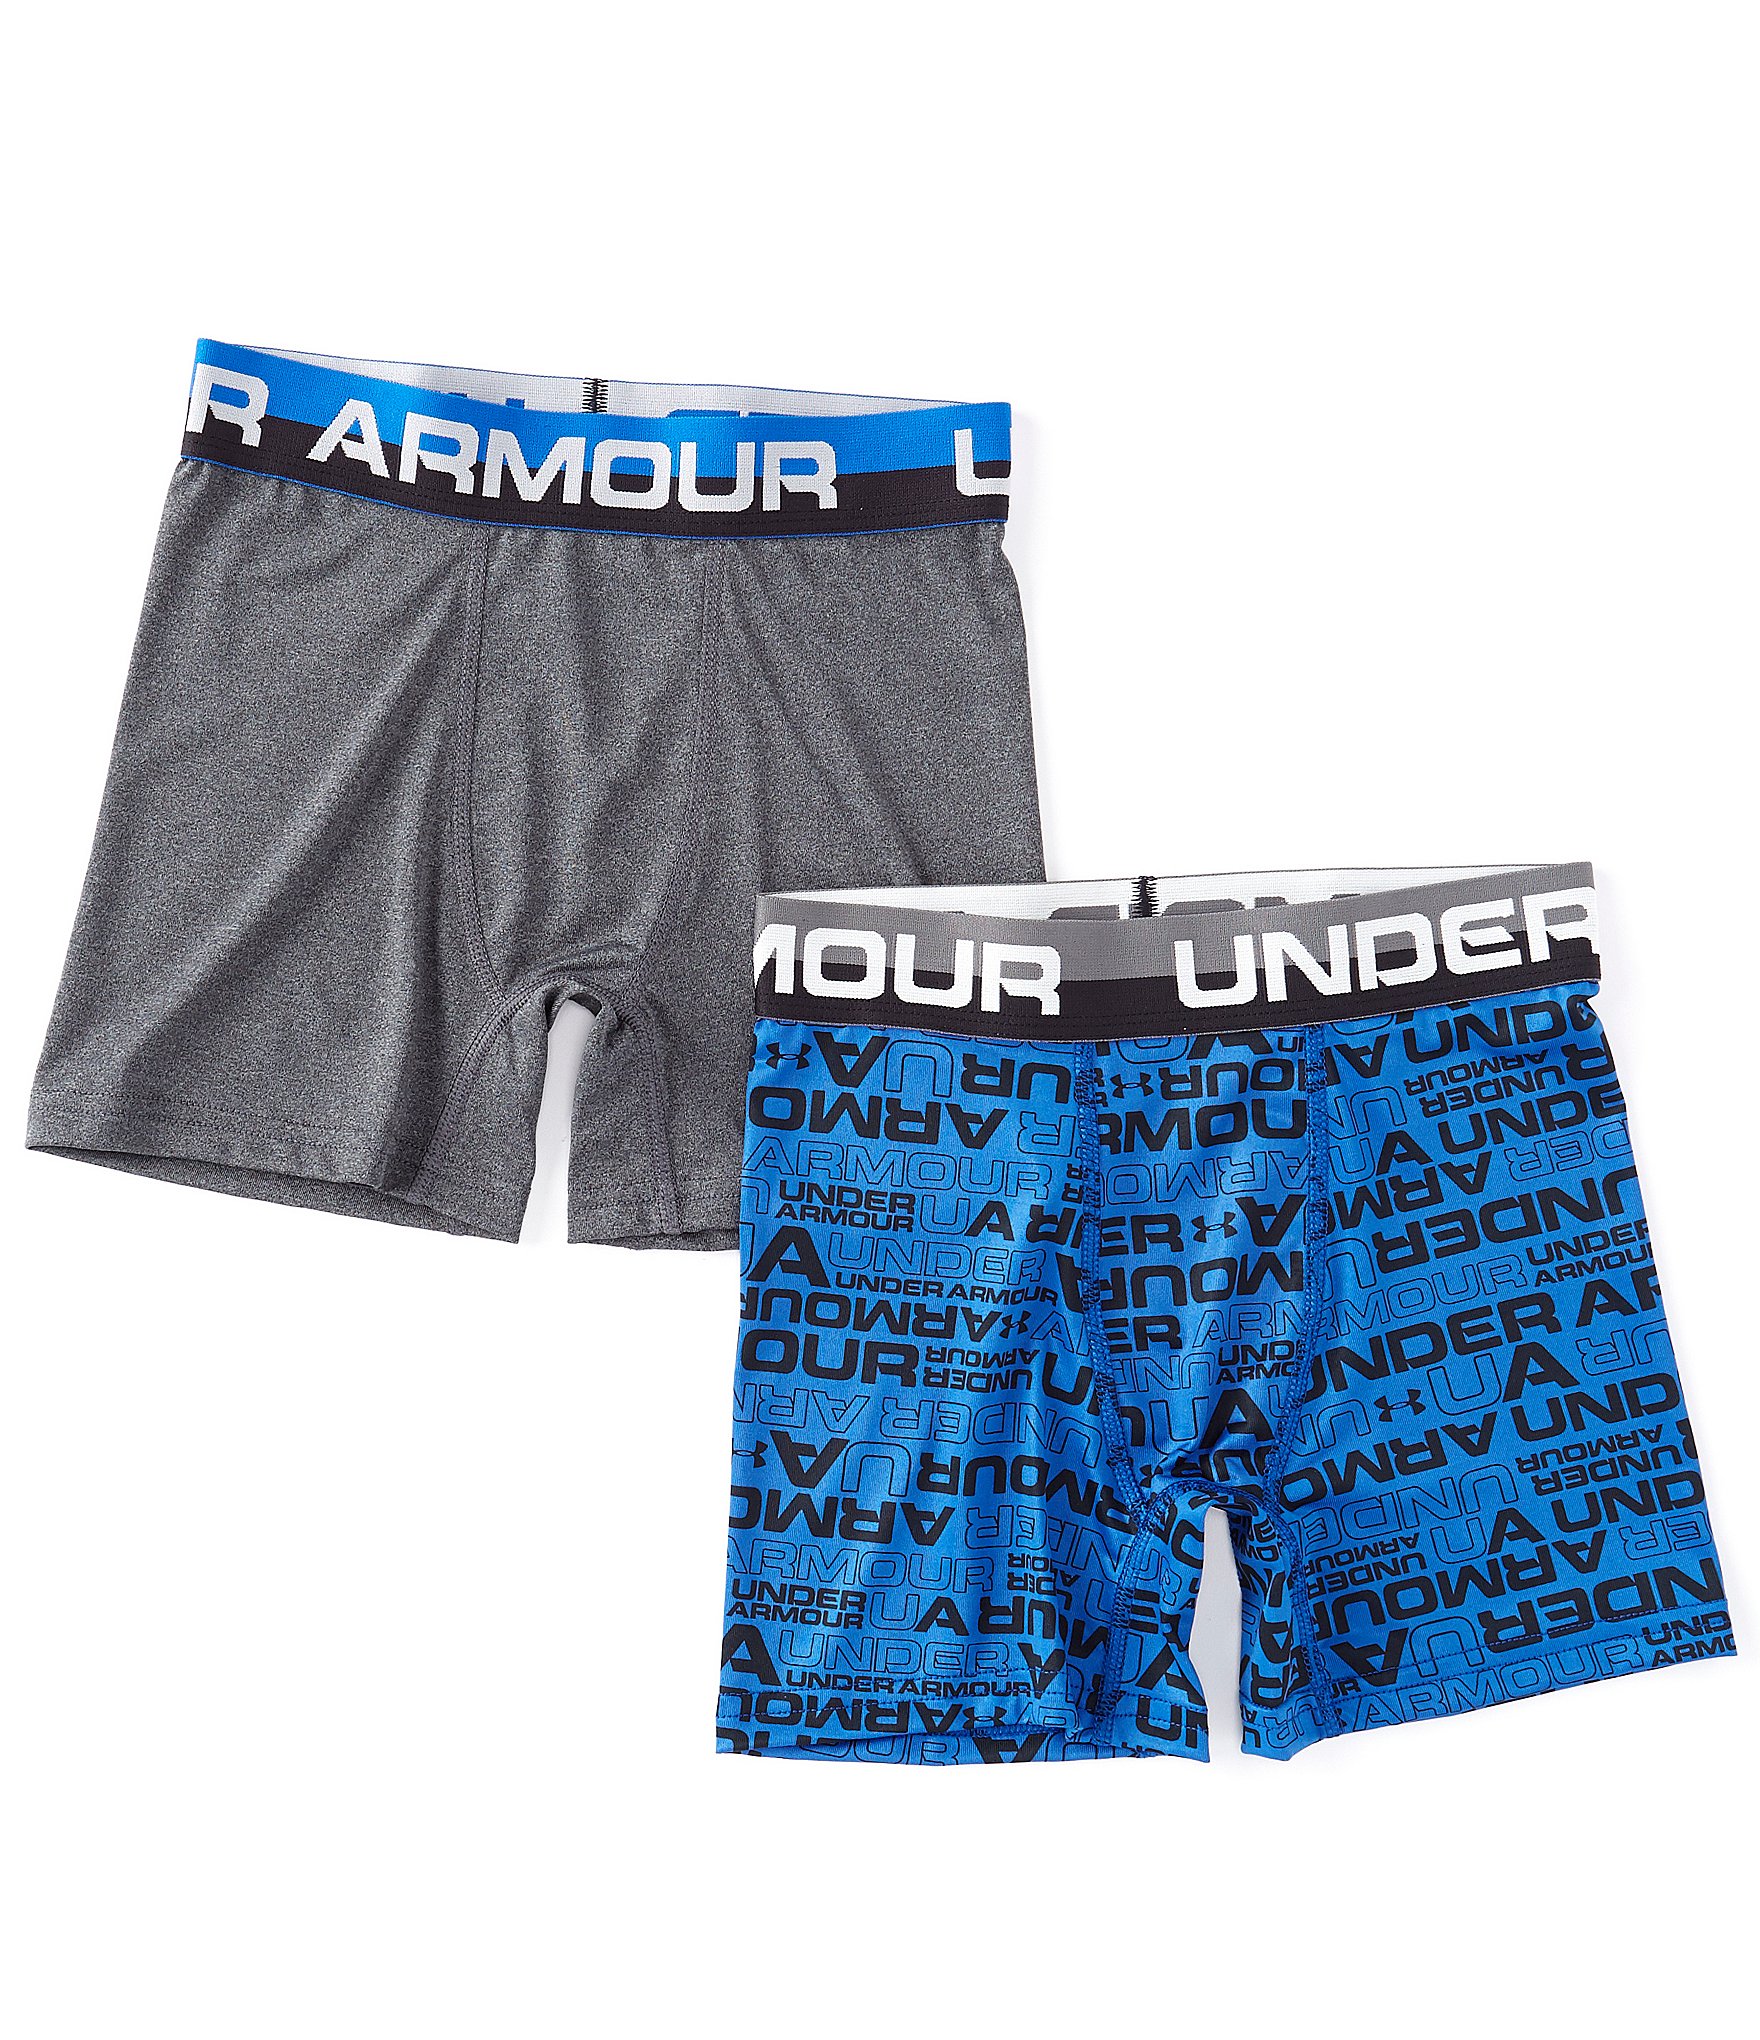 2 Boys Under armour Underwear YSM (4W4)